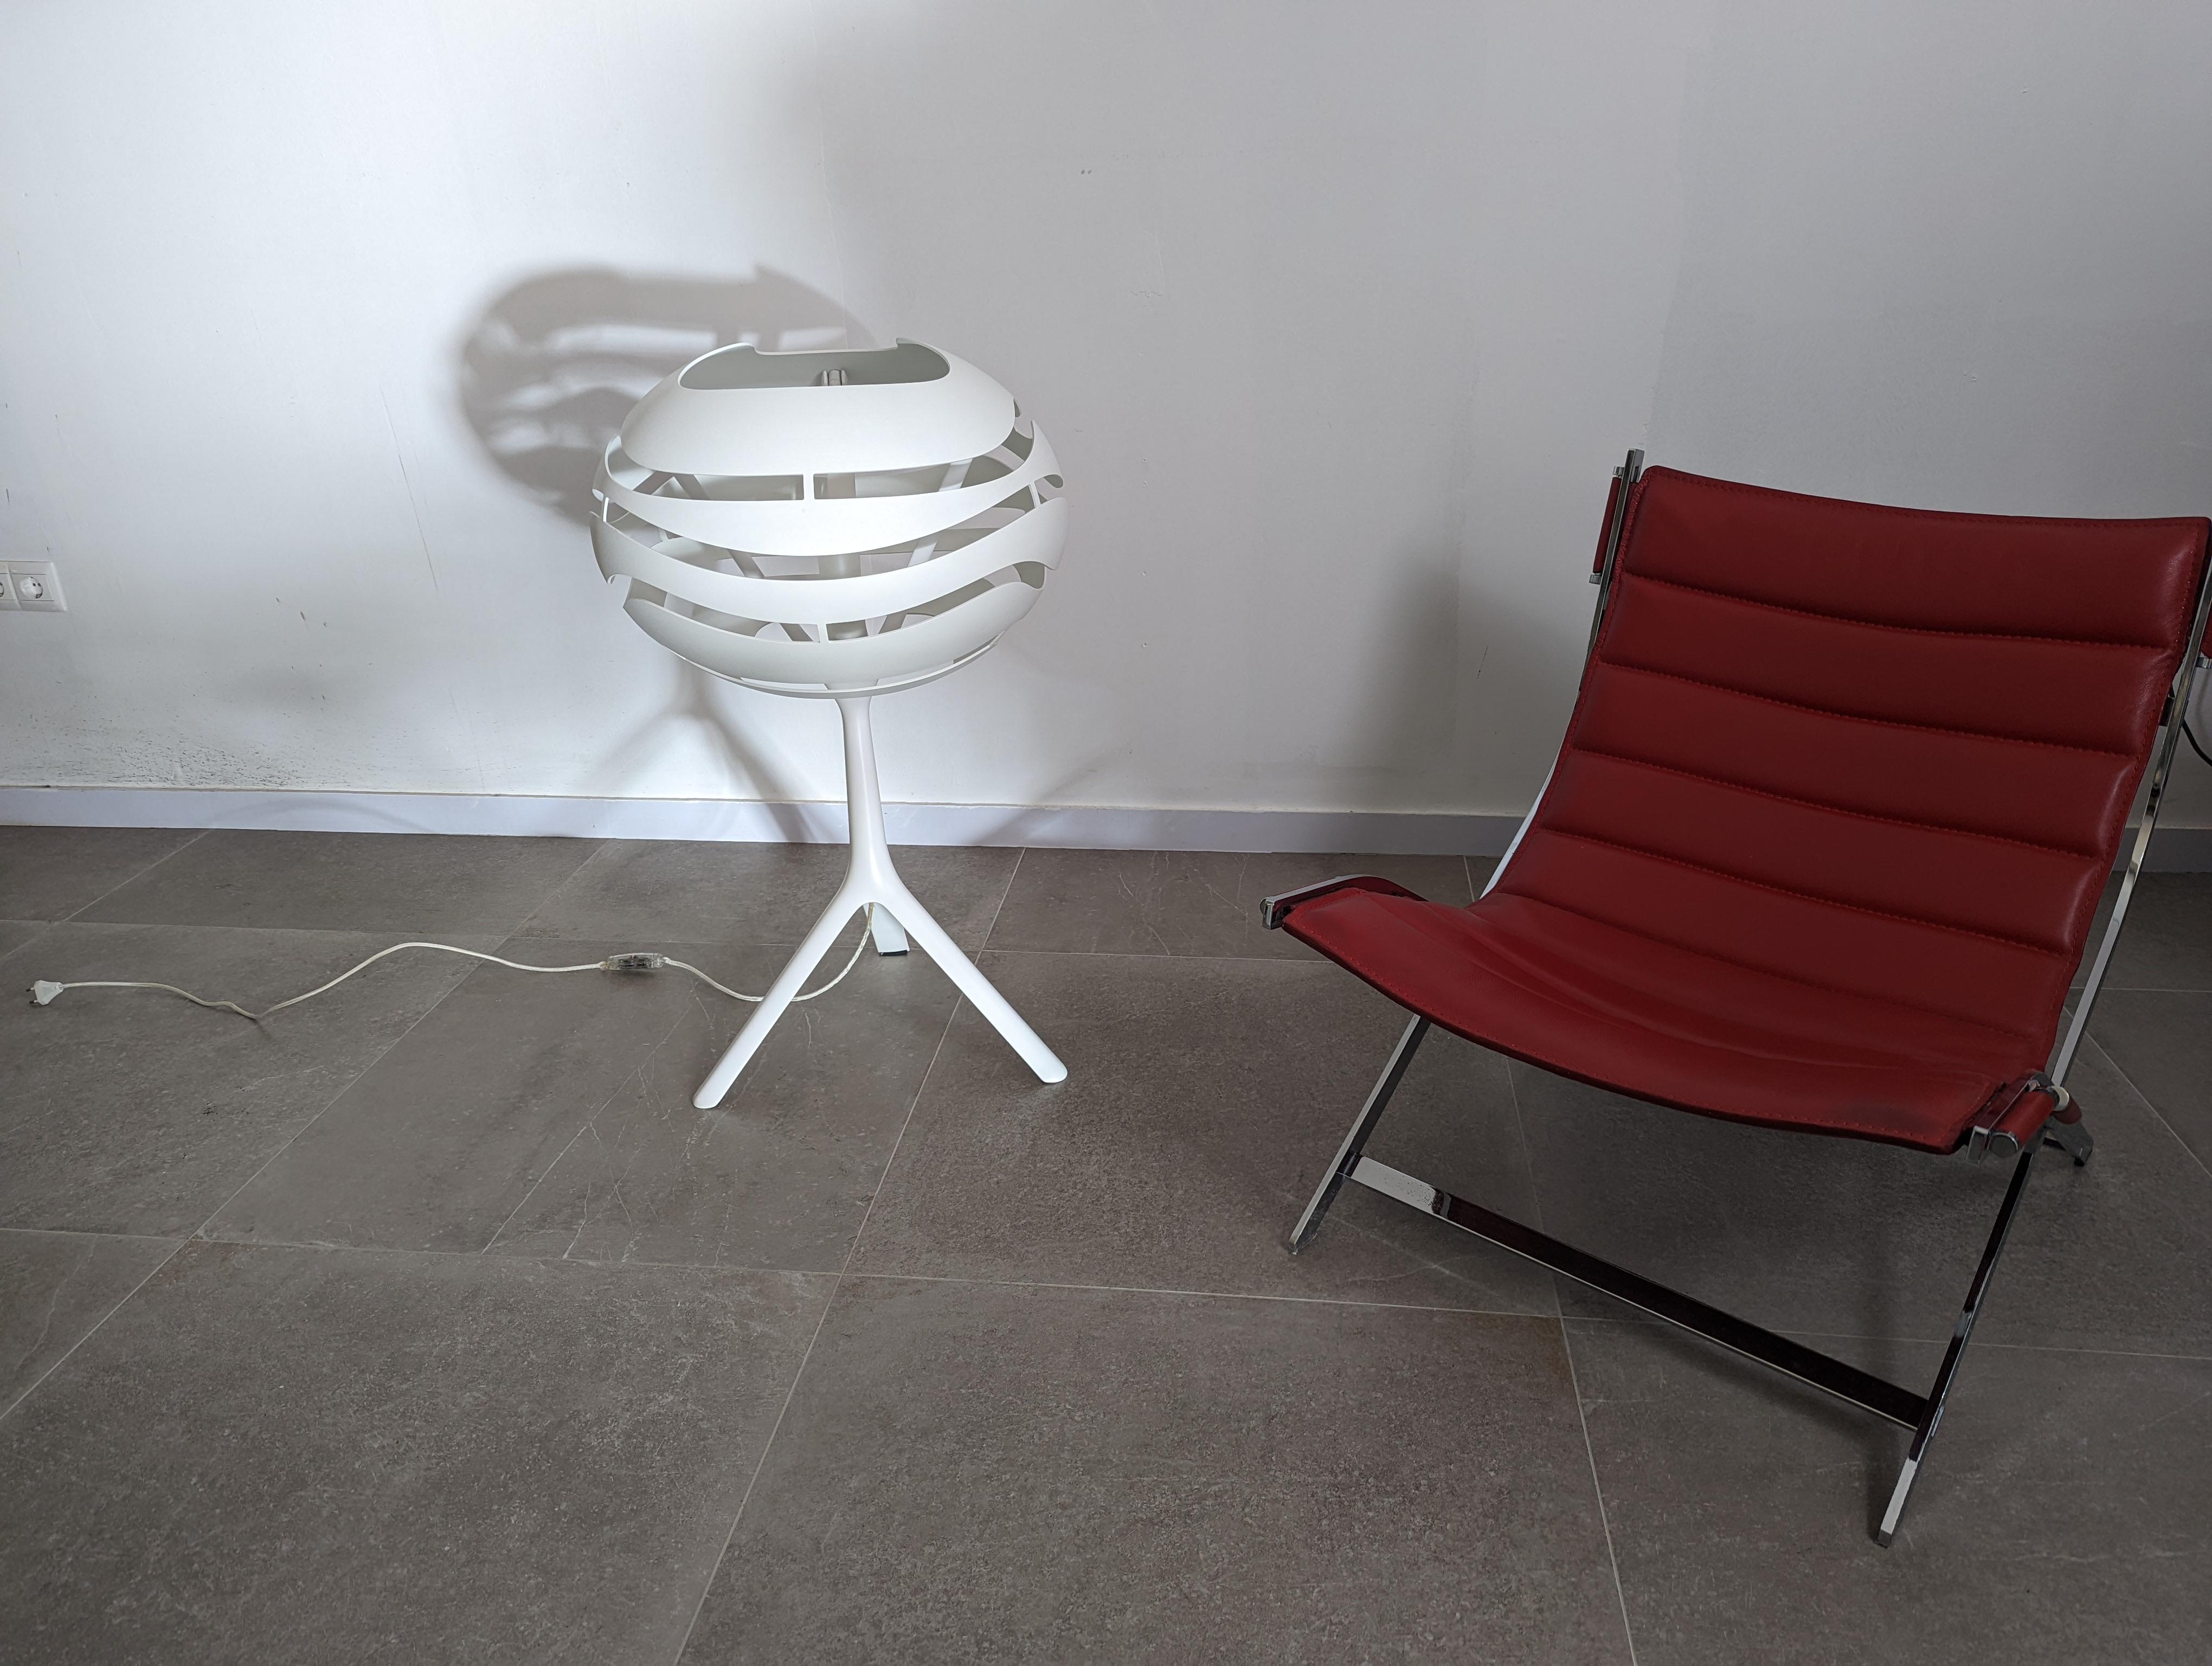 Magnifique lampe d'arbre de la marque B.Lux conçue par Werner Aisslinger dans son modèle de table et de sol T50 en blanc. Avec ses lignes douces, harmoniques et modernes, c'est une lampe idéale pour les environnements agréables et relaxants.